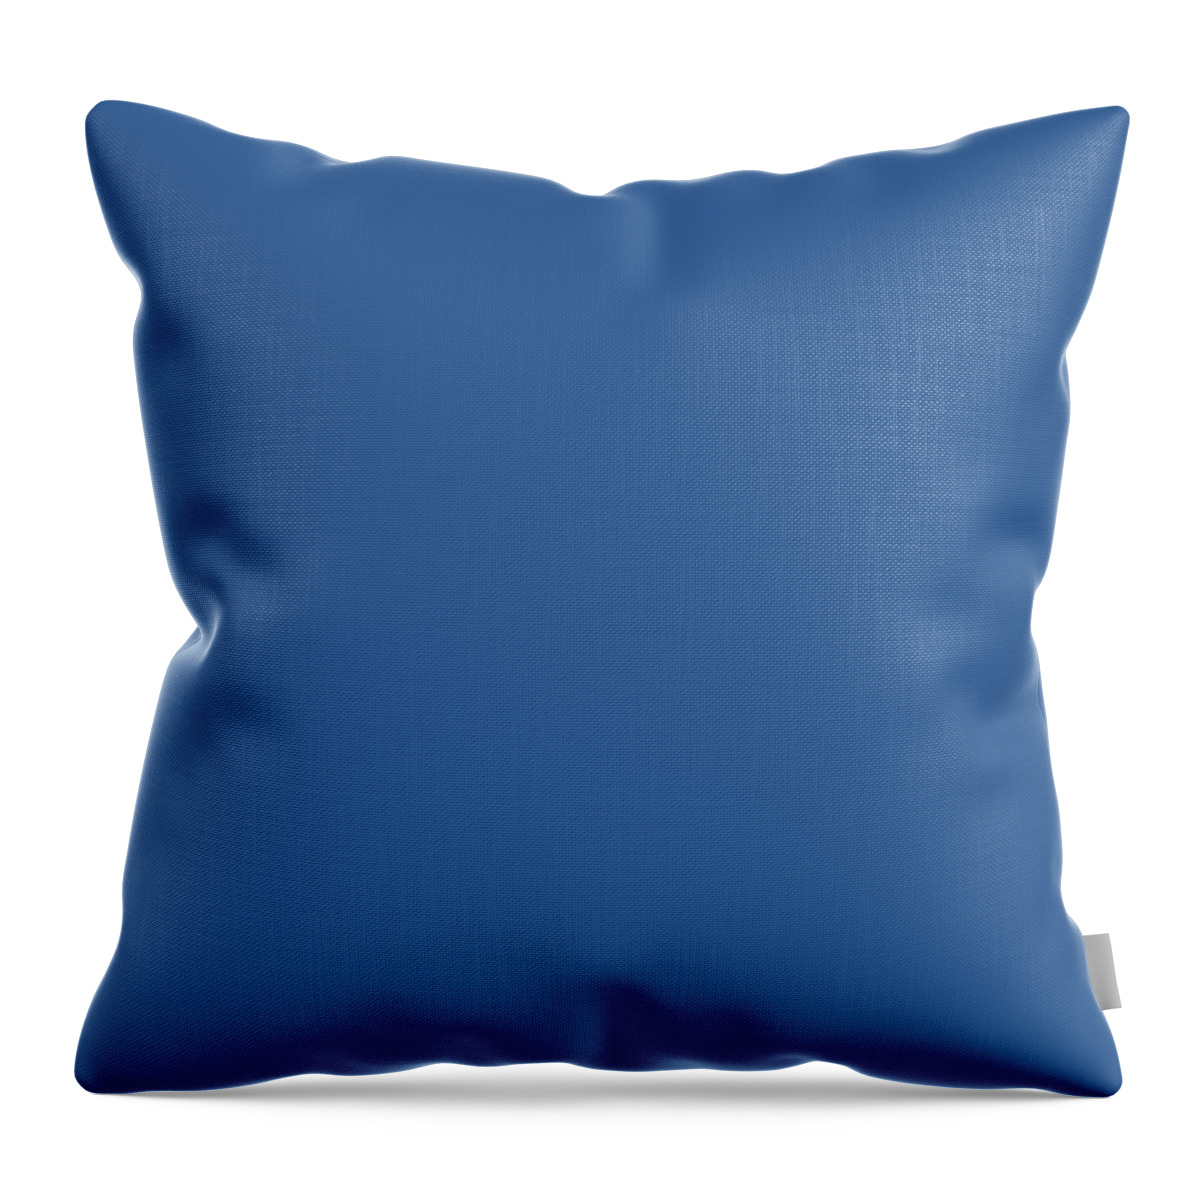 Blue Regatta Throw Pillow featuring the digital art Blue Regatta by TintoDesigns